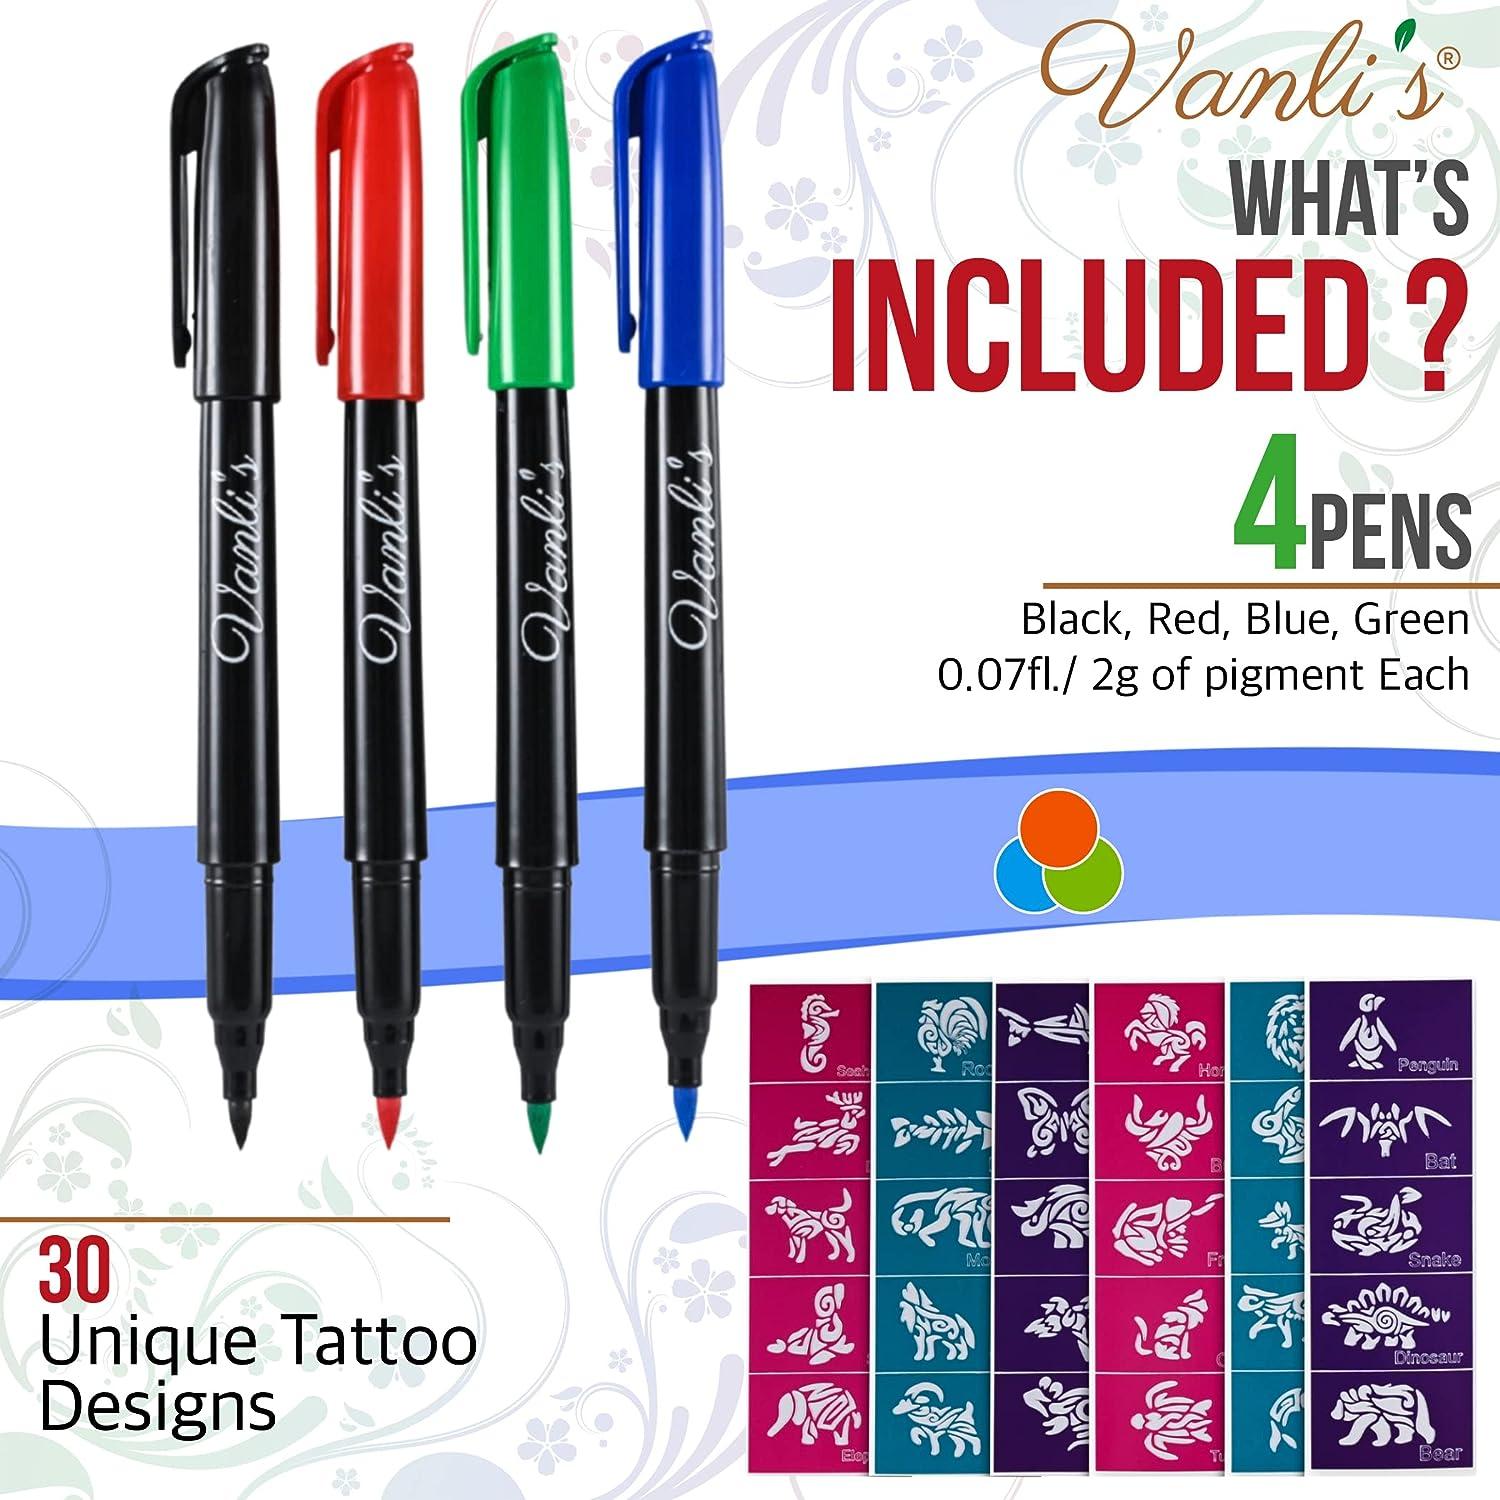 Fine point sharpie pen  Pen tattoo, Sharpie pens, Markers drawing ideas